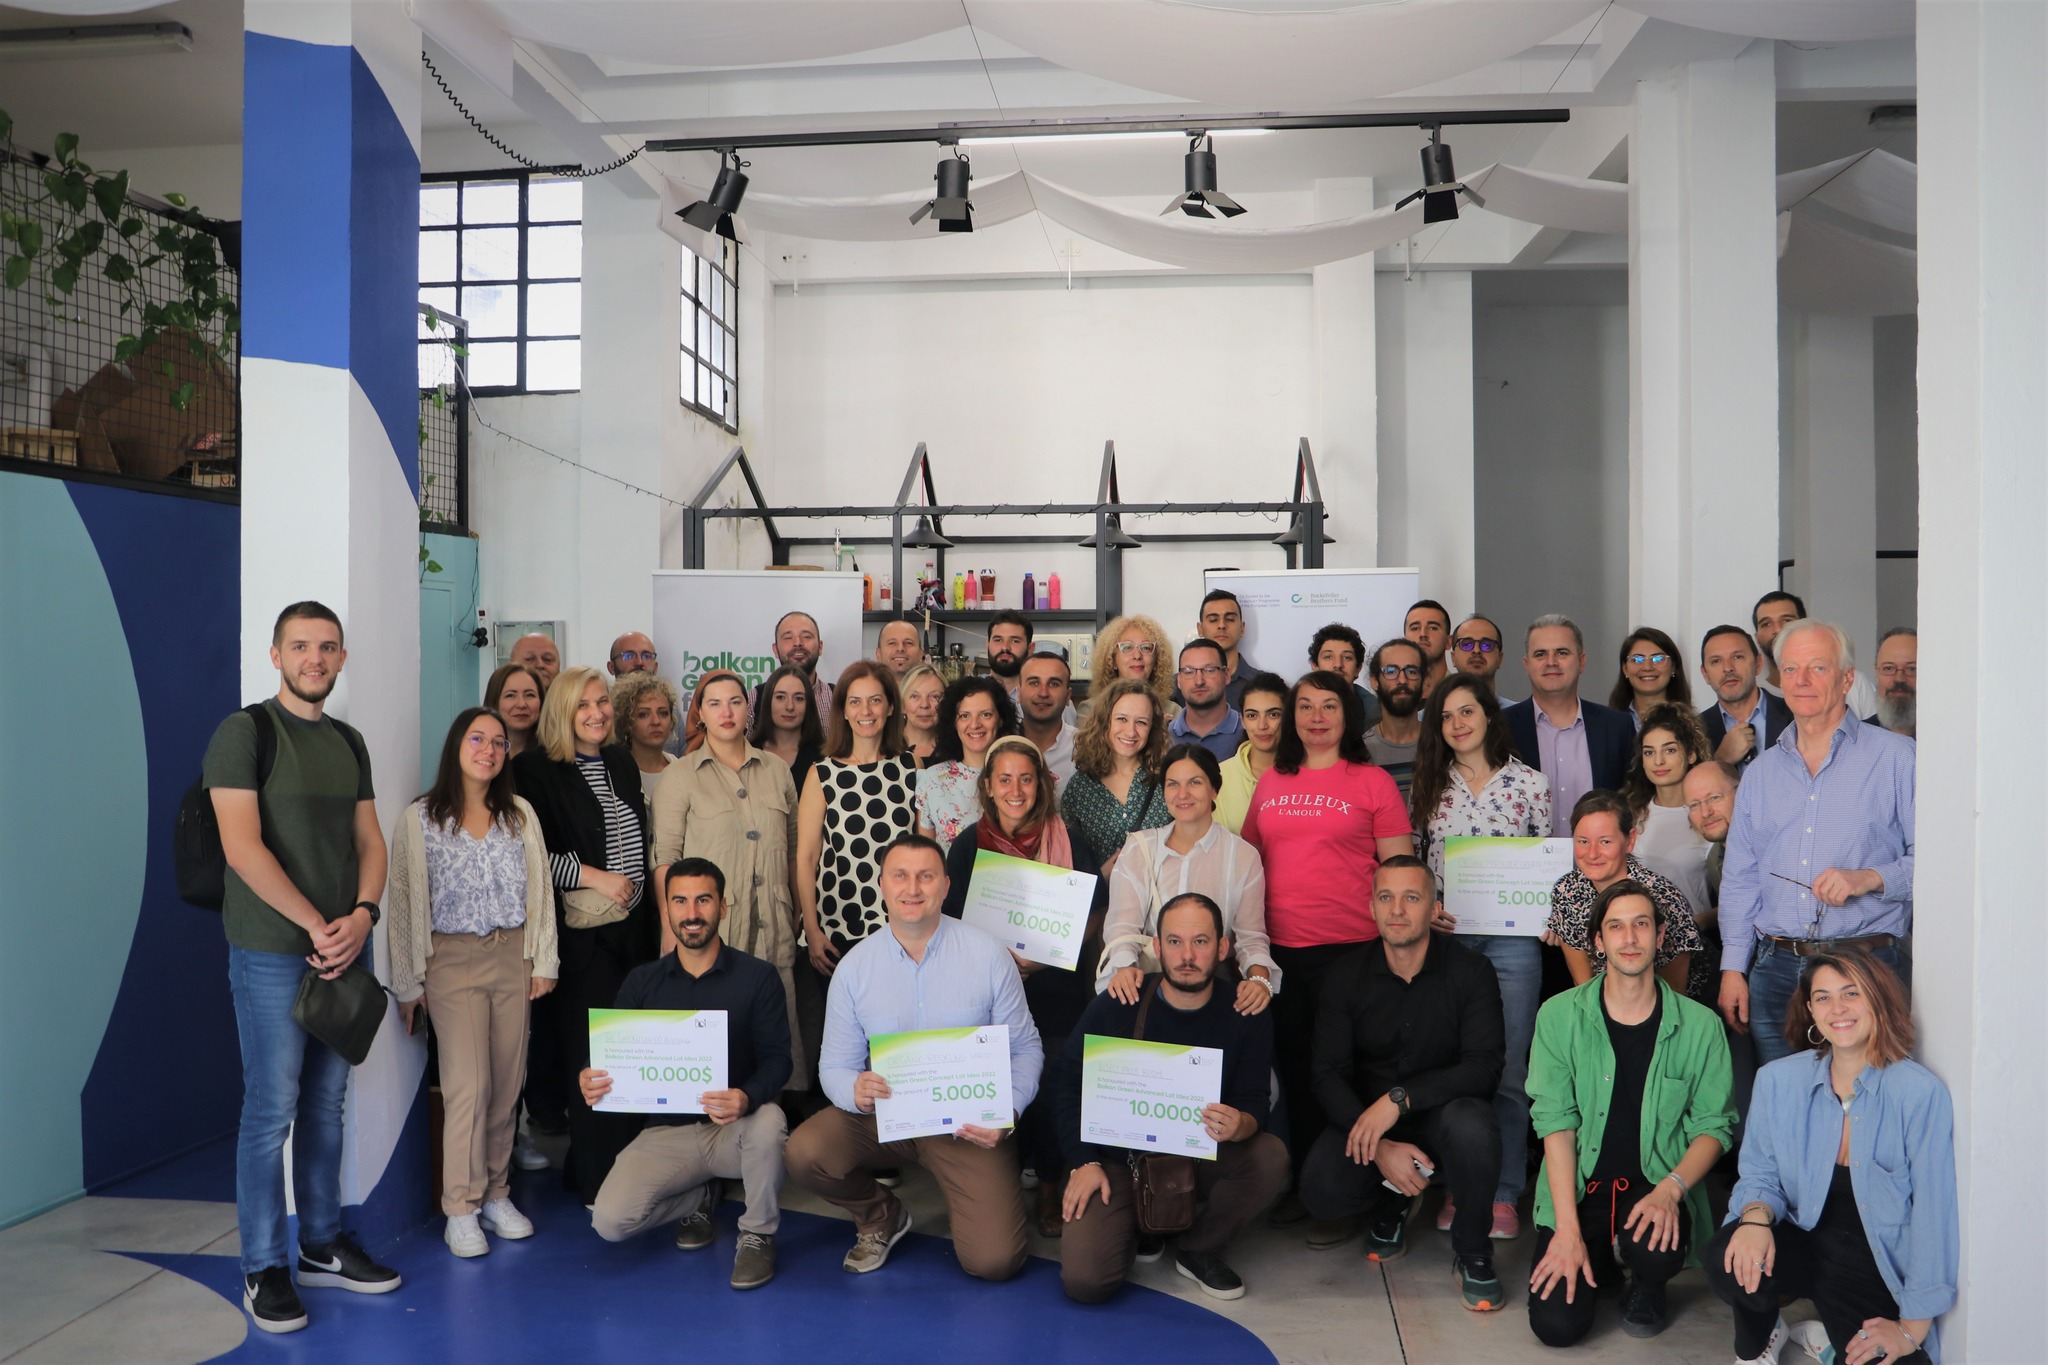 E ardhmja e të ushqyerit me proteina – biznesi i gjelbër maqedonas, u  shpërblye në një konkurs rajonal image